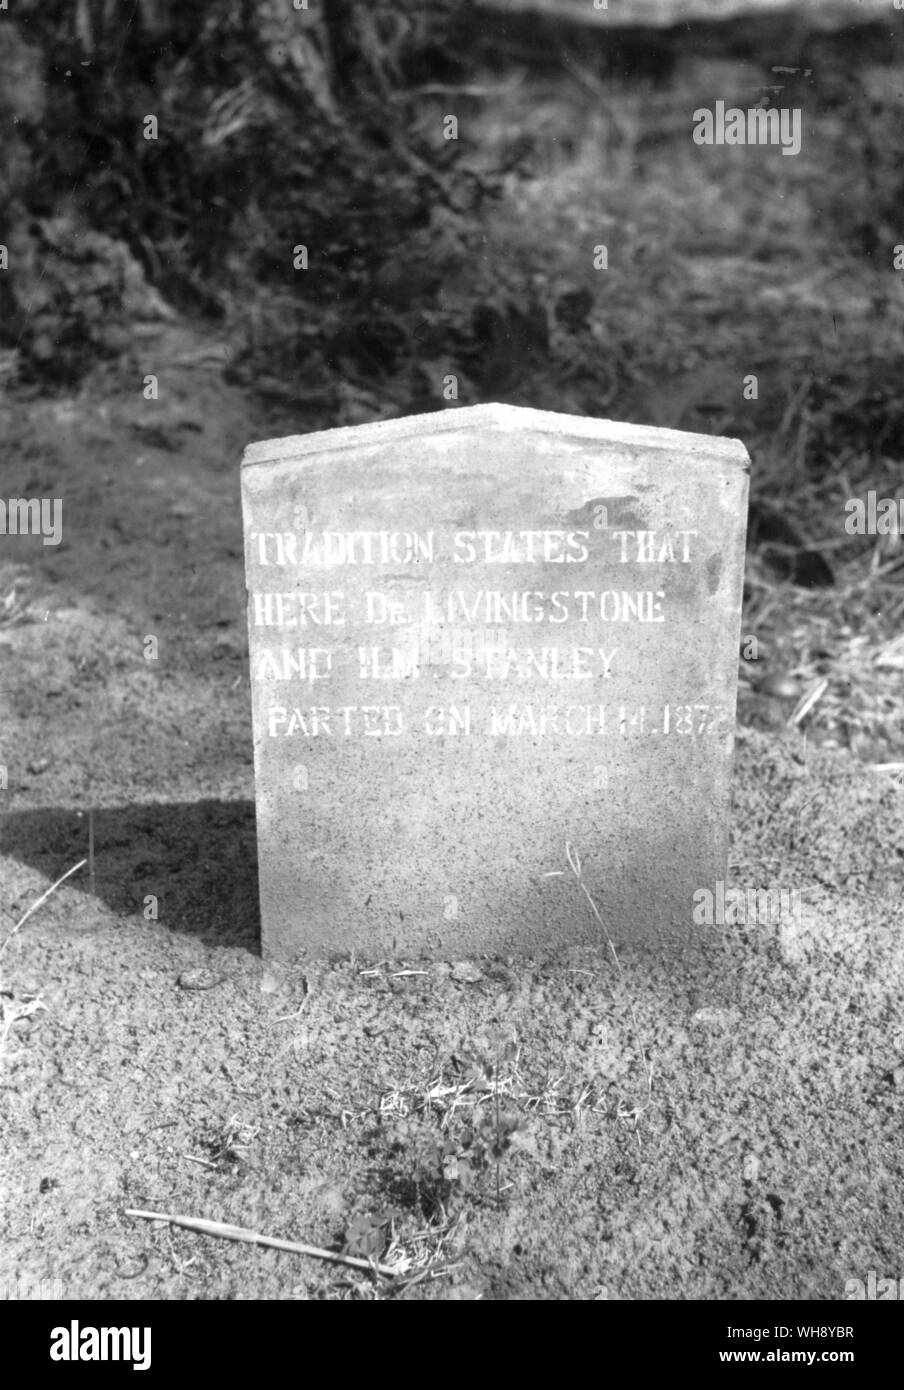 Dos placas de señalización Livingstone Stanley partiendo desde el 14 de marzo de 1872, y el sitio de la casa de Livingstone, tras su reunión con Stanley hasta el 25 de agosto de 1872, fecha en la cual partió sobre cuál iba a ser su último viaje. Foto de stock